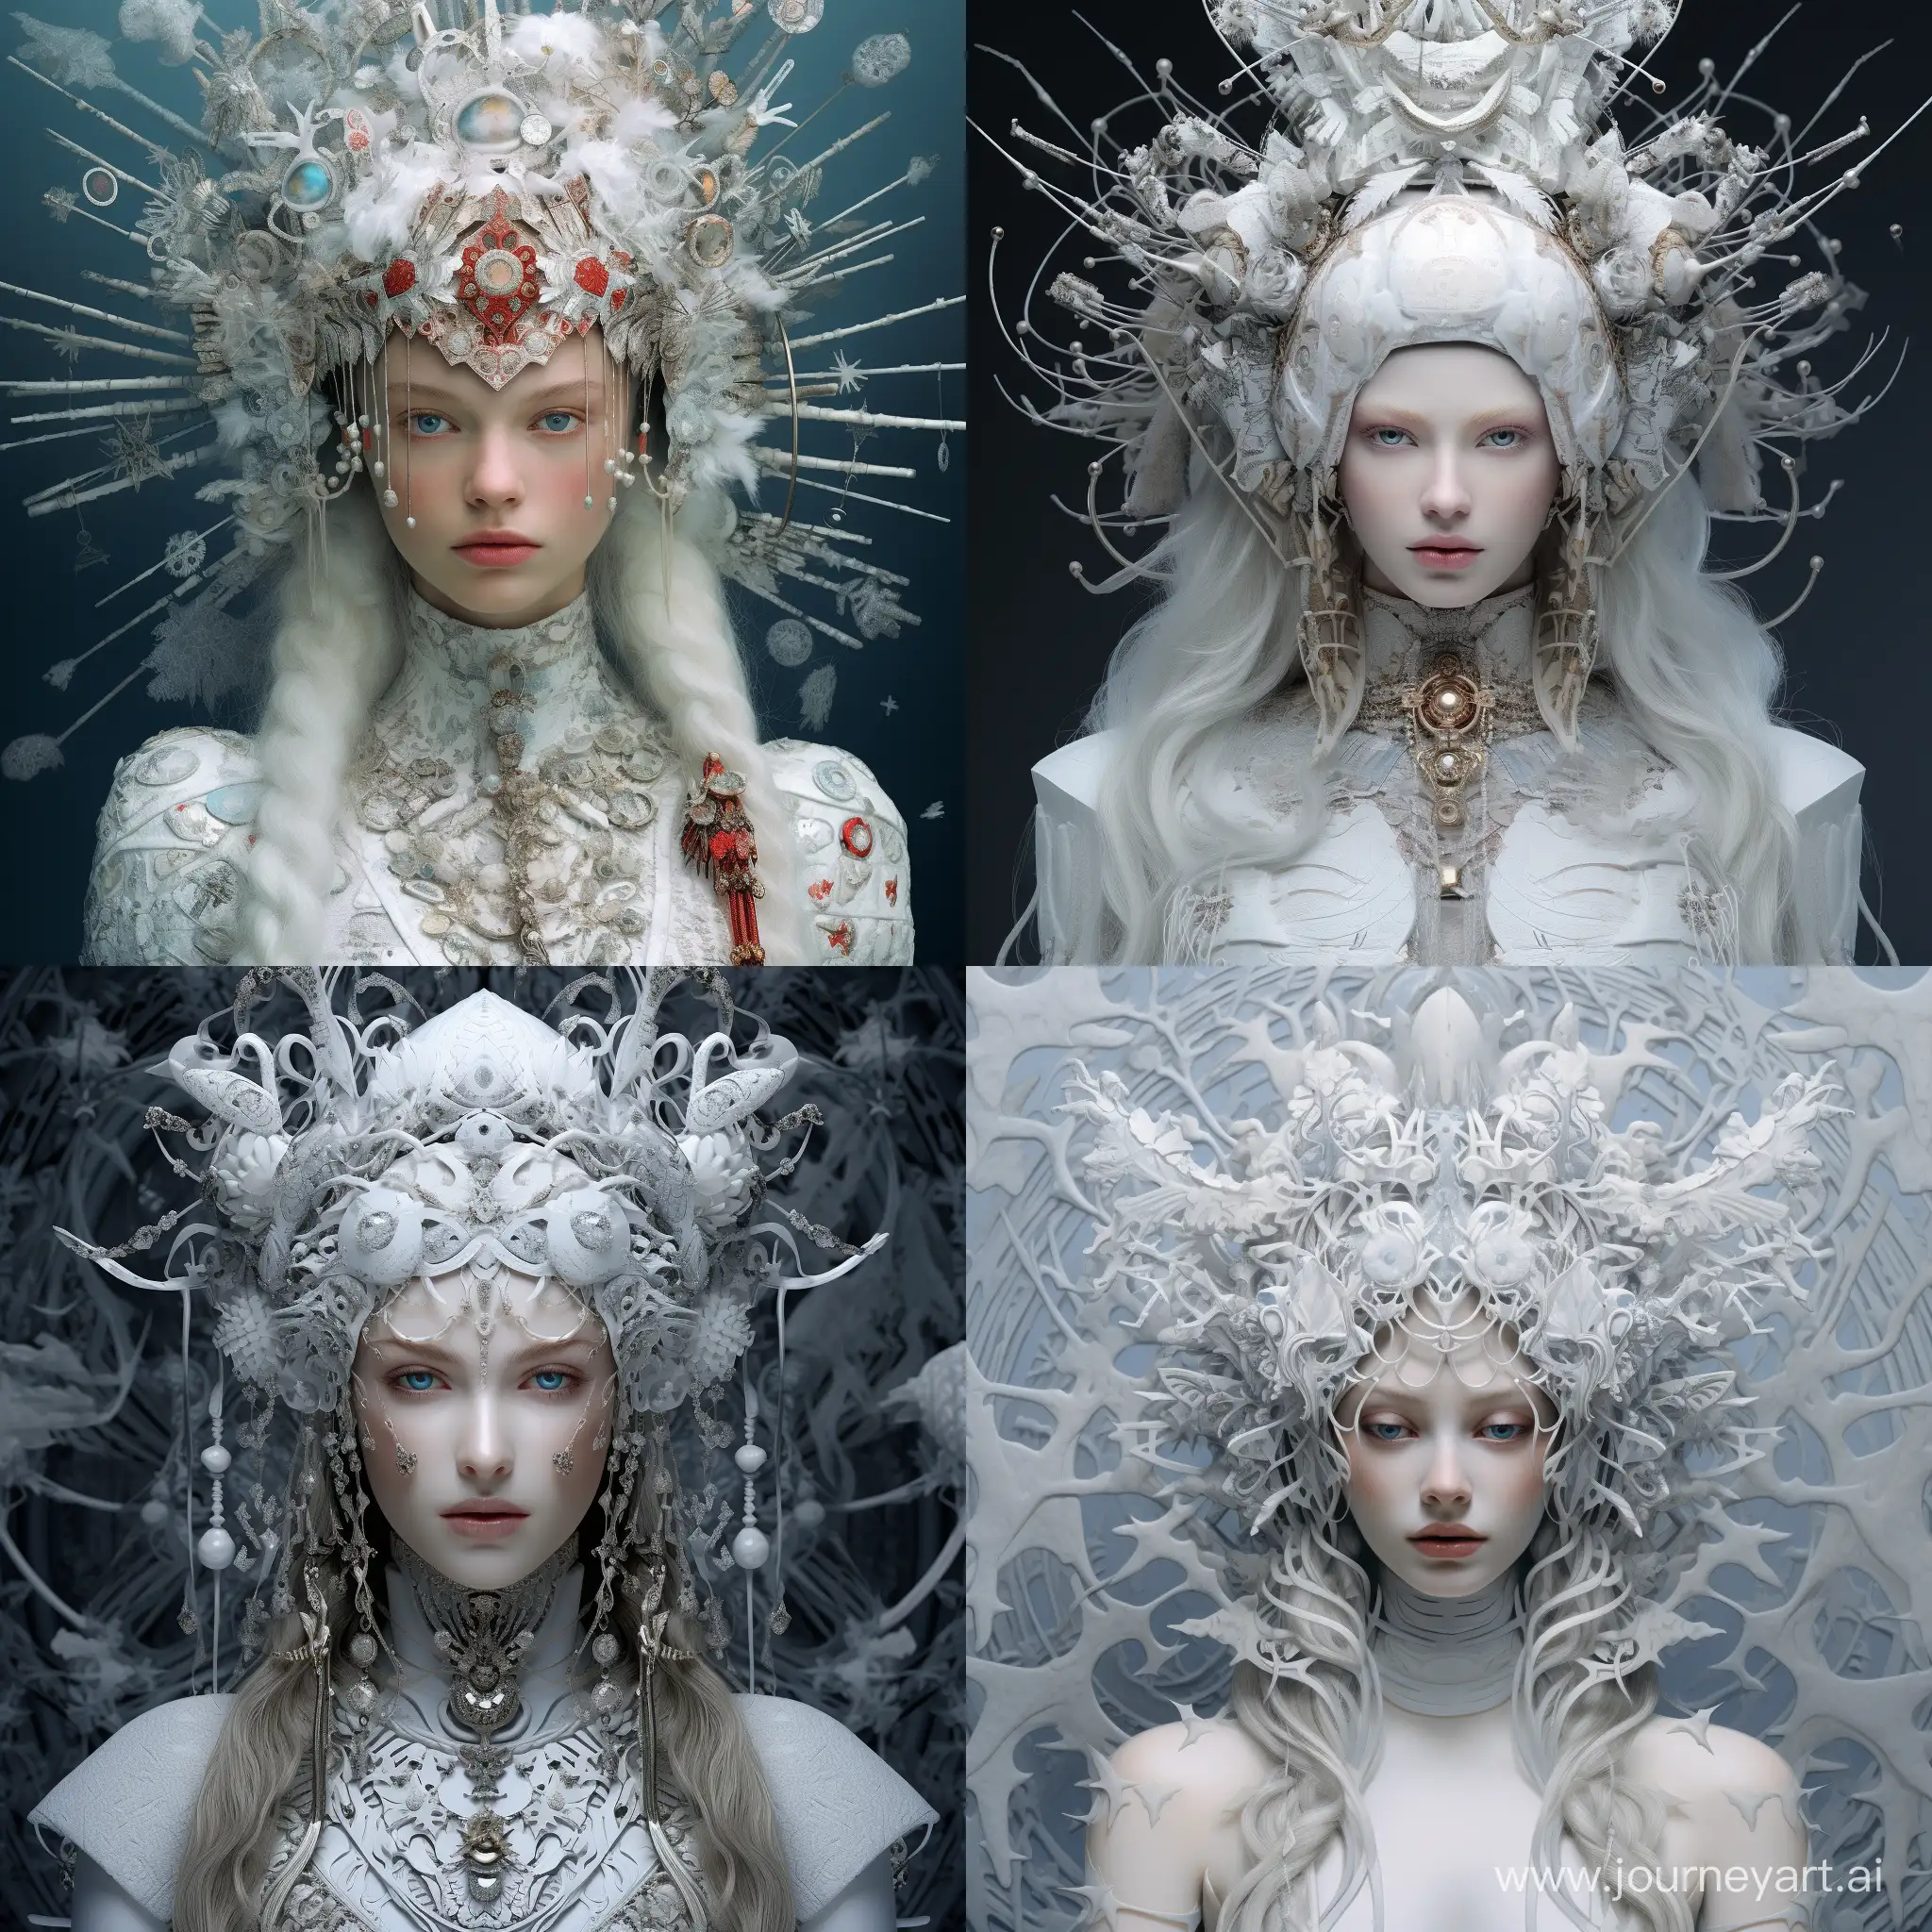 Futuristic-Neural-Snow-Maiden-in-a-Techno-Wonderland